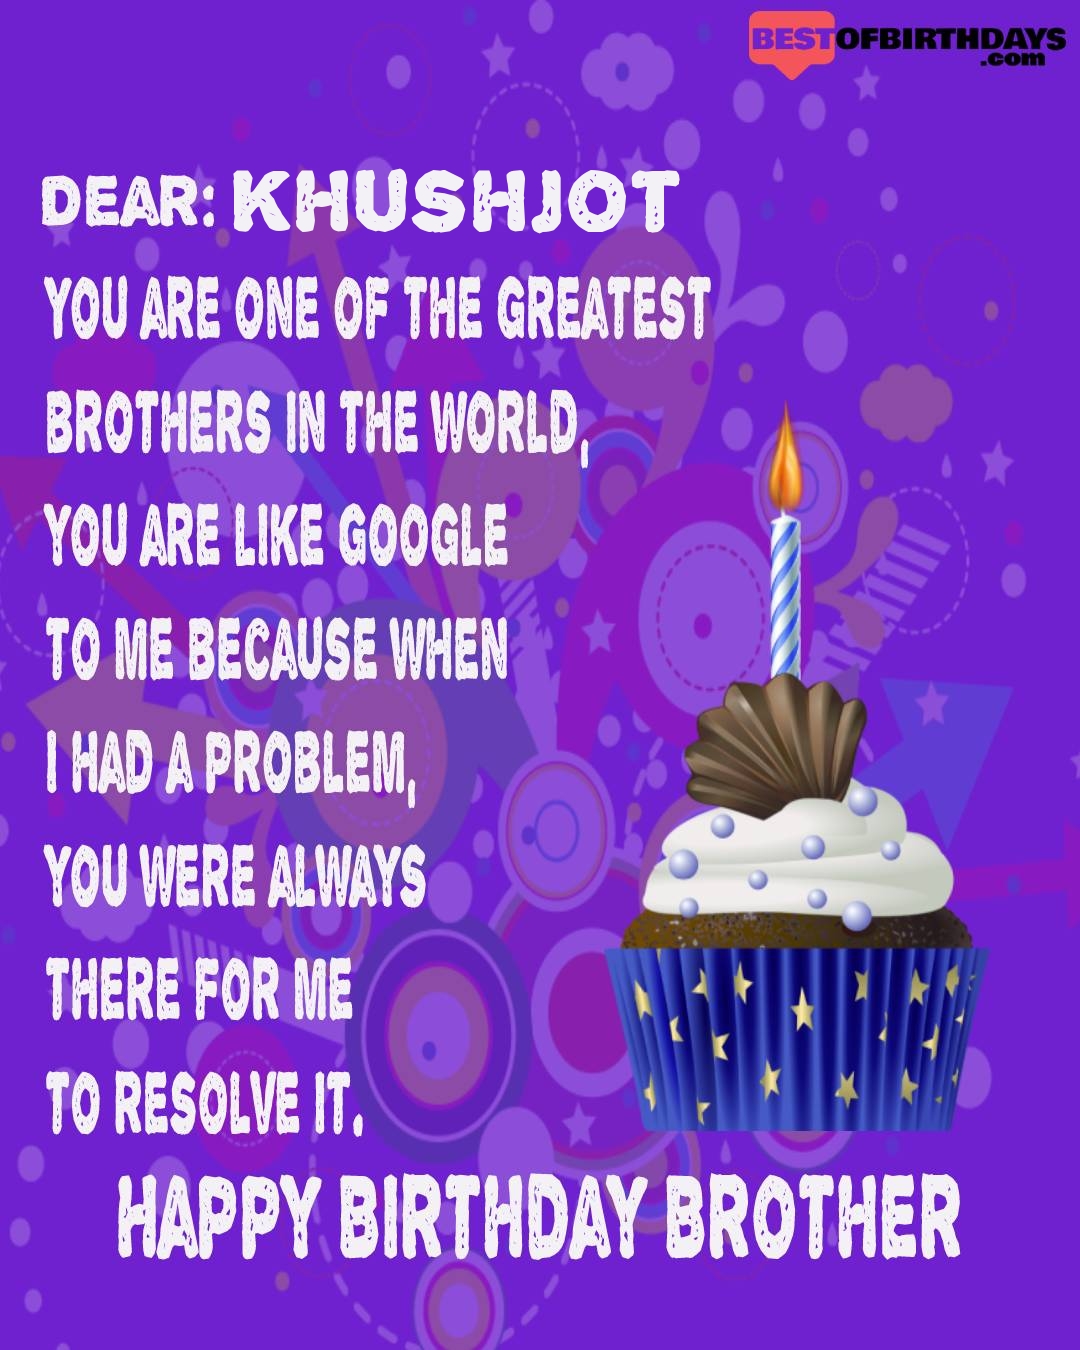 Happy birthday khushjot bhai brother bro